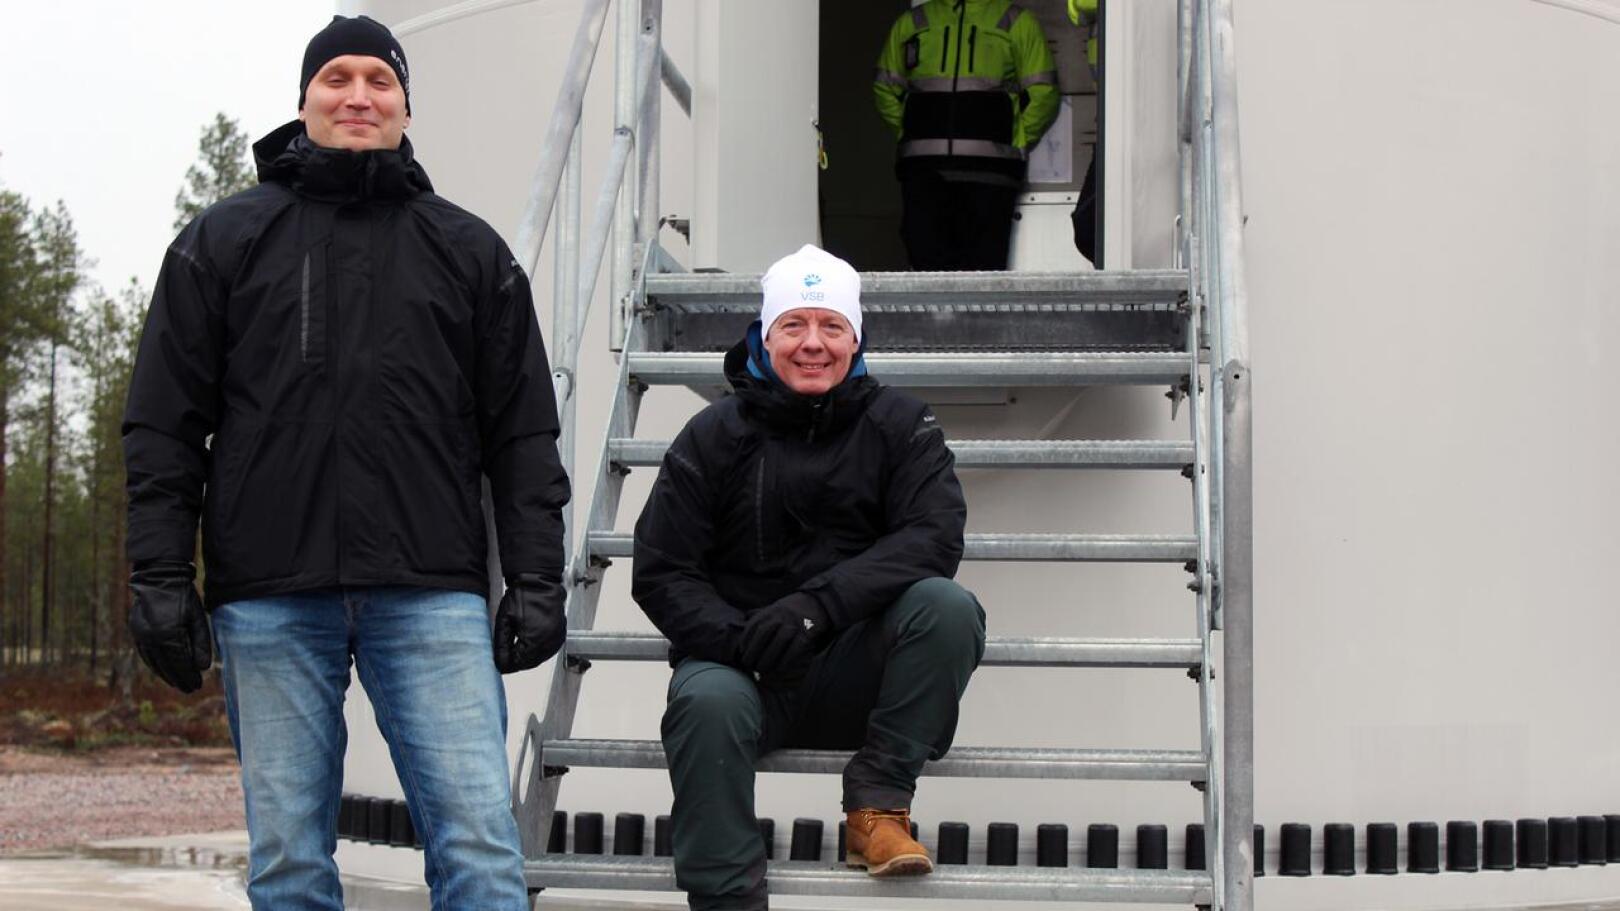 VSB -konsernin miehet, Suomen rakentamisjohtaja Sami Orajärvi ja Uusiutuva Energia Suomi Oy:n toimitusjohtaja Seppo Tallgren huokaisevat tyytyväisyydestä Juurakon tuulipuiston valmistuttua ajallaan. Taustalla yksi seitsemästä turbiinista, jolla on korkeutta 230 metriä.